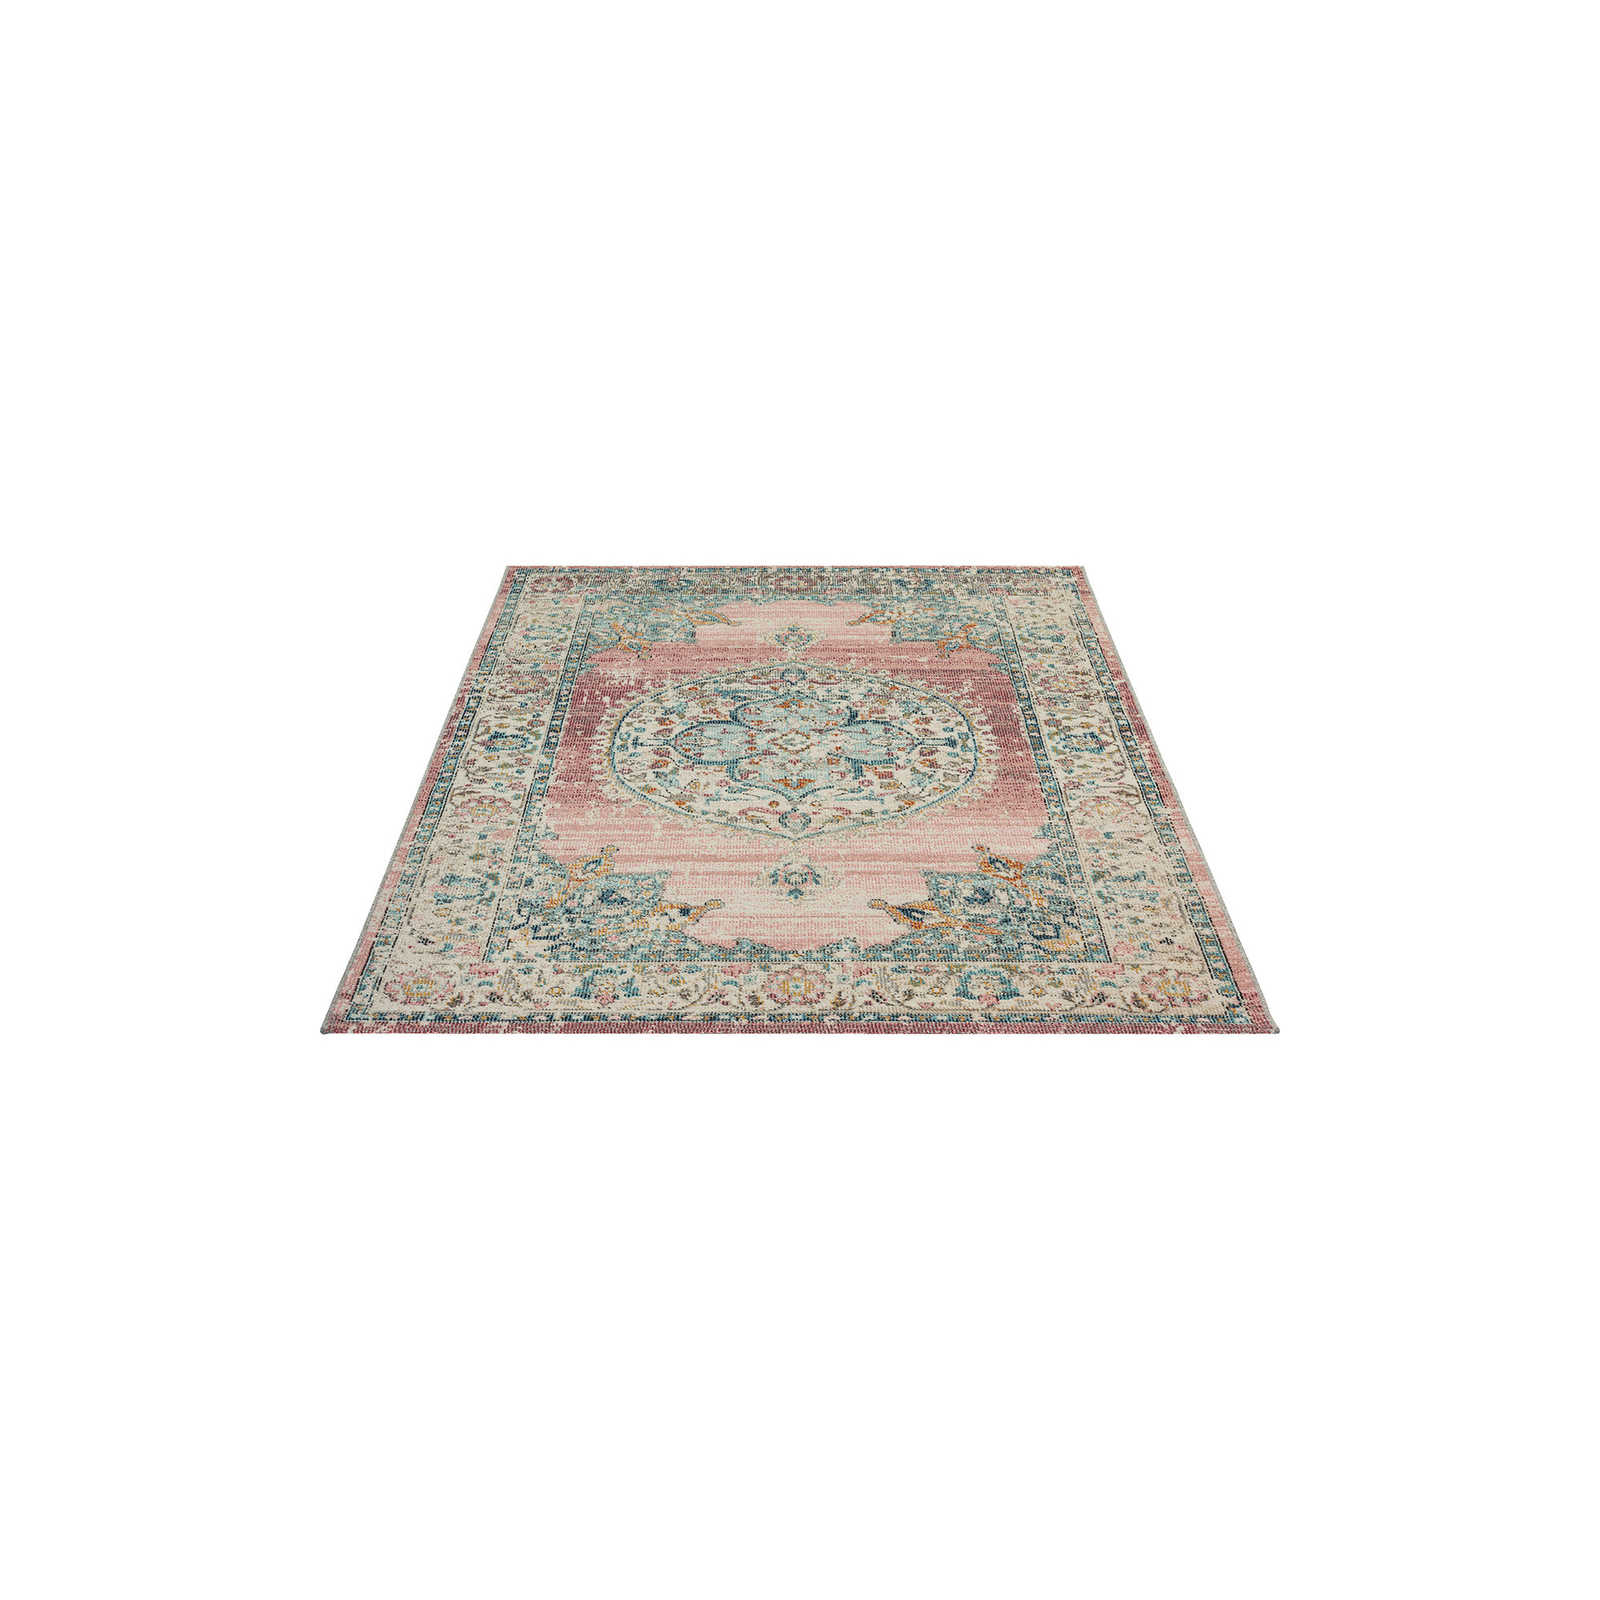 Flatweave tapijt voor buiten met roze accenten - 200 x 140 cm
